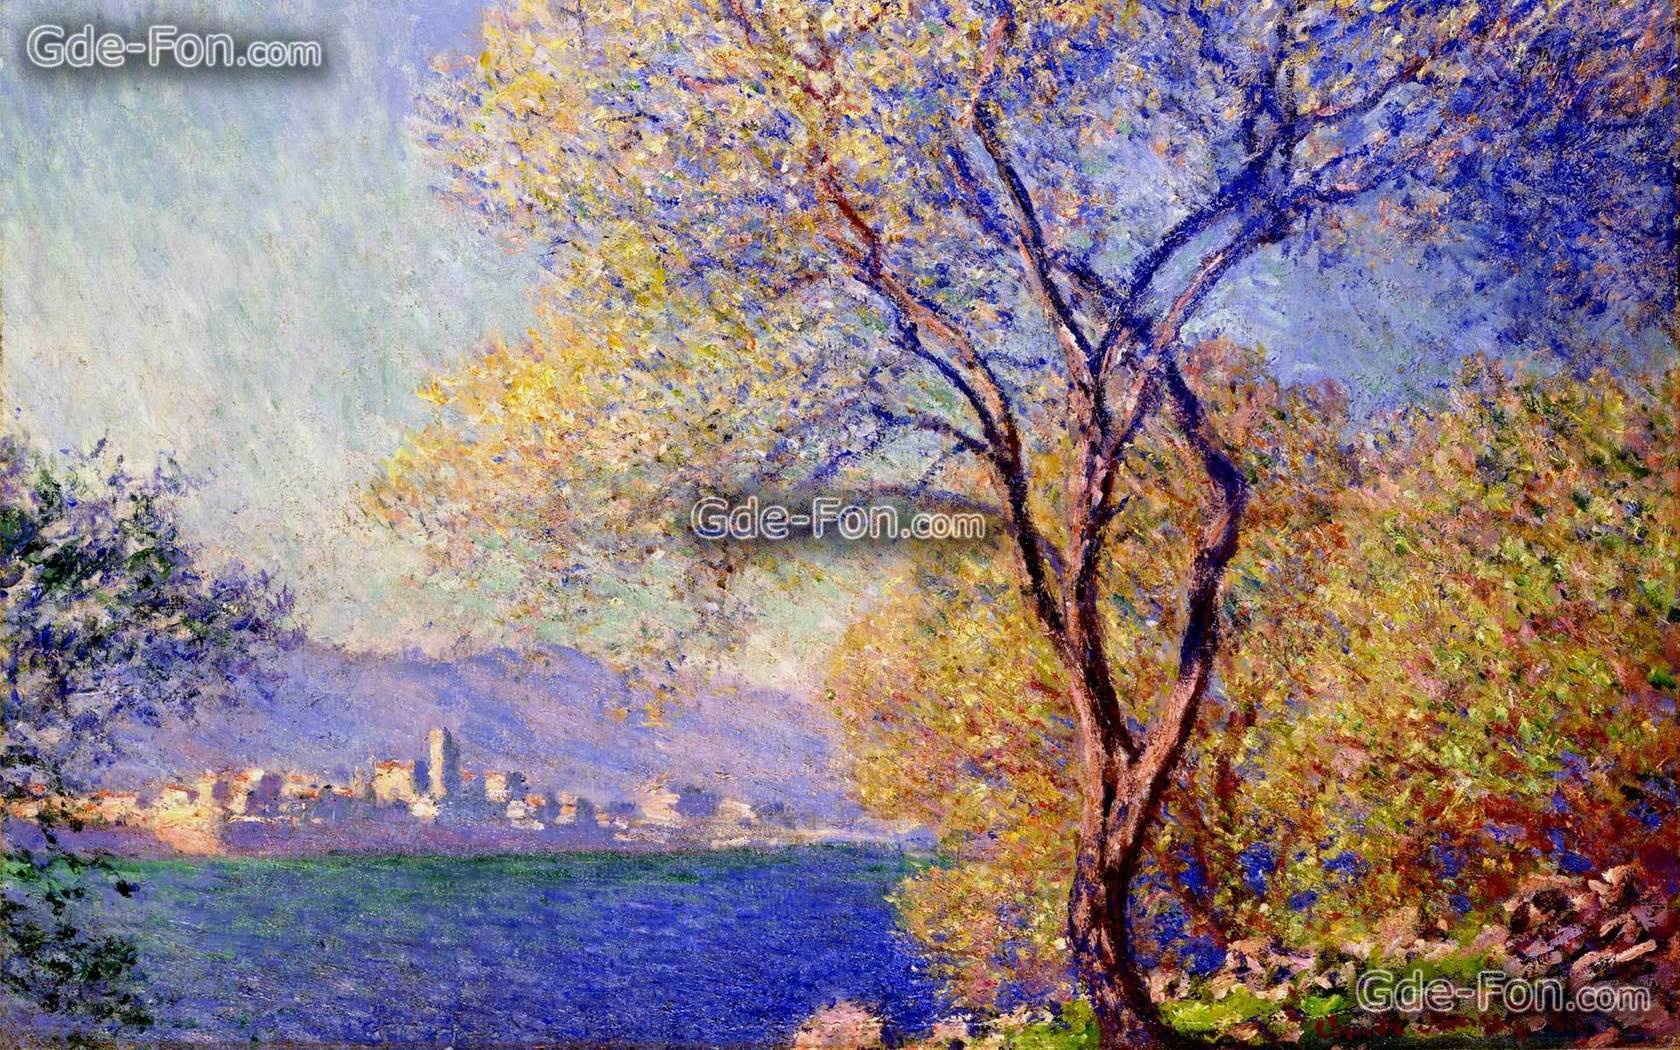 Download wallpaper Claude Monet, landscape, tree, picture free